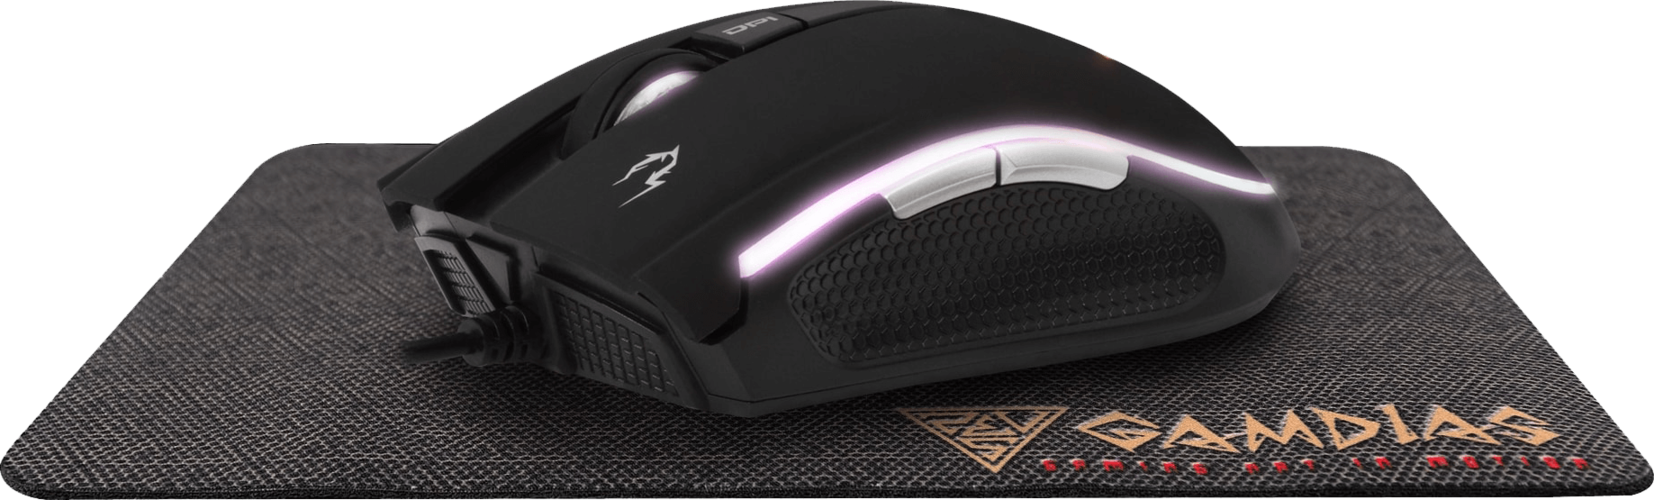 Gamdias Zeus E2 RGB Gaming Mouse + NYX E1 Mouse Pad